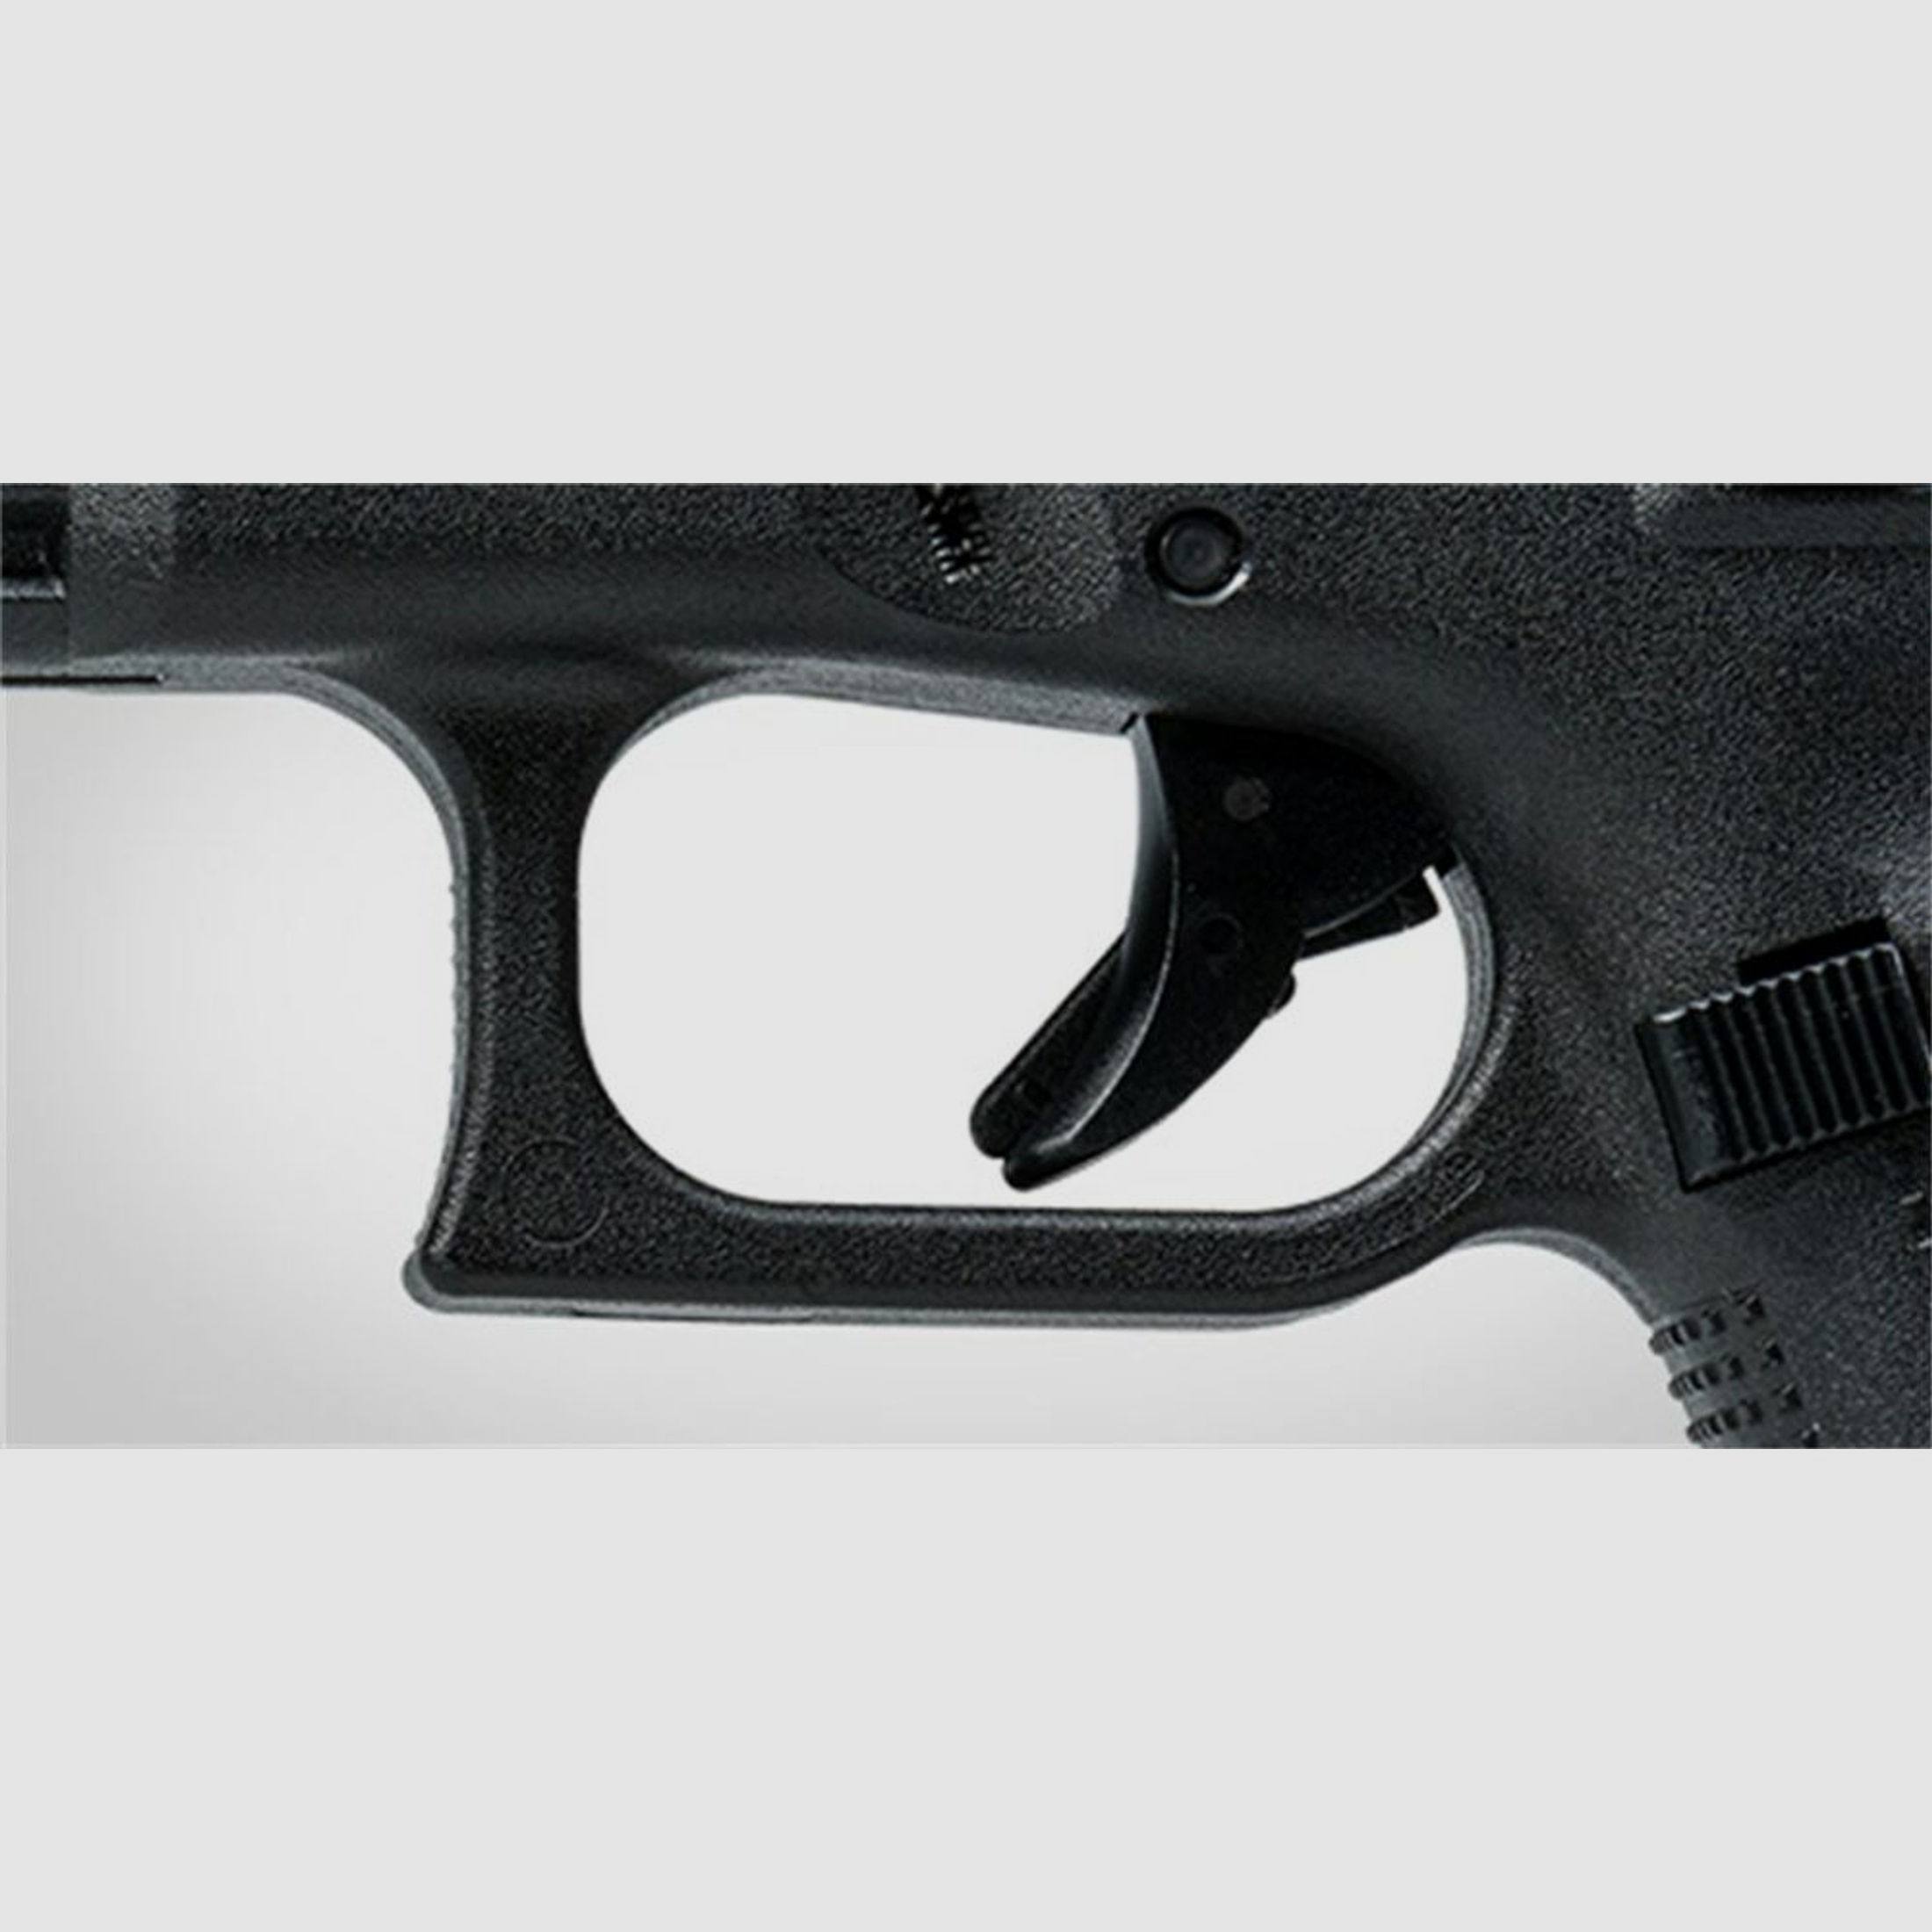 Glock 17 Gen5 M.O.S.